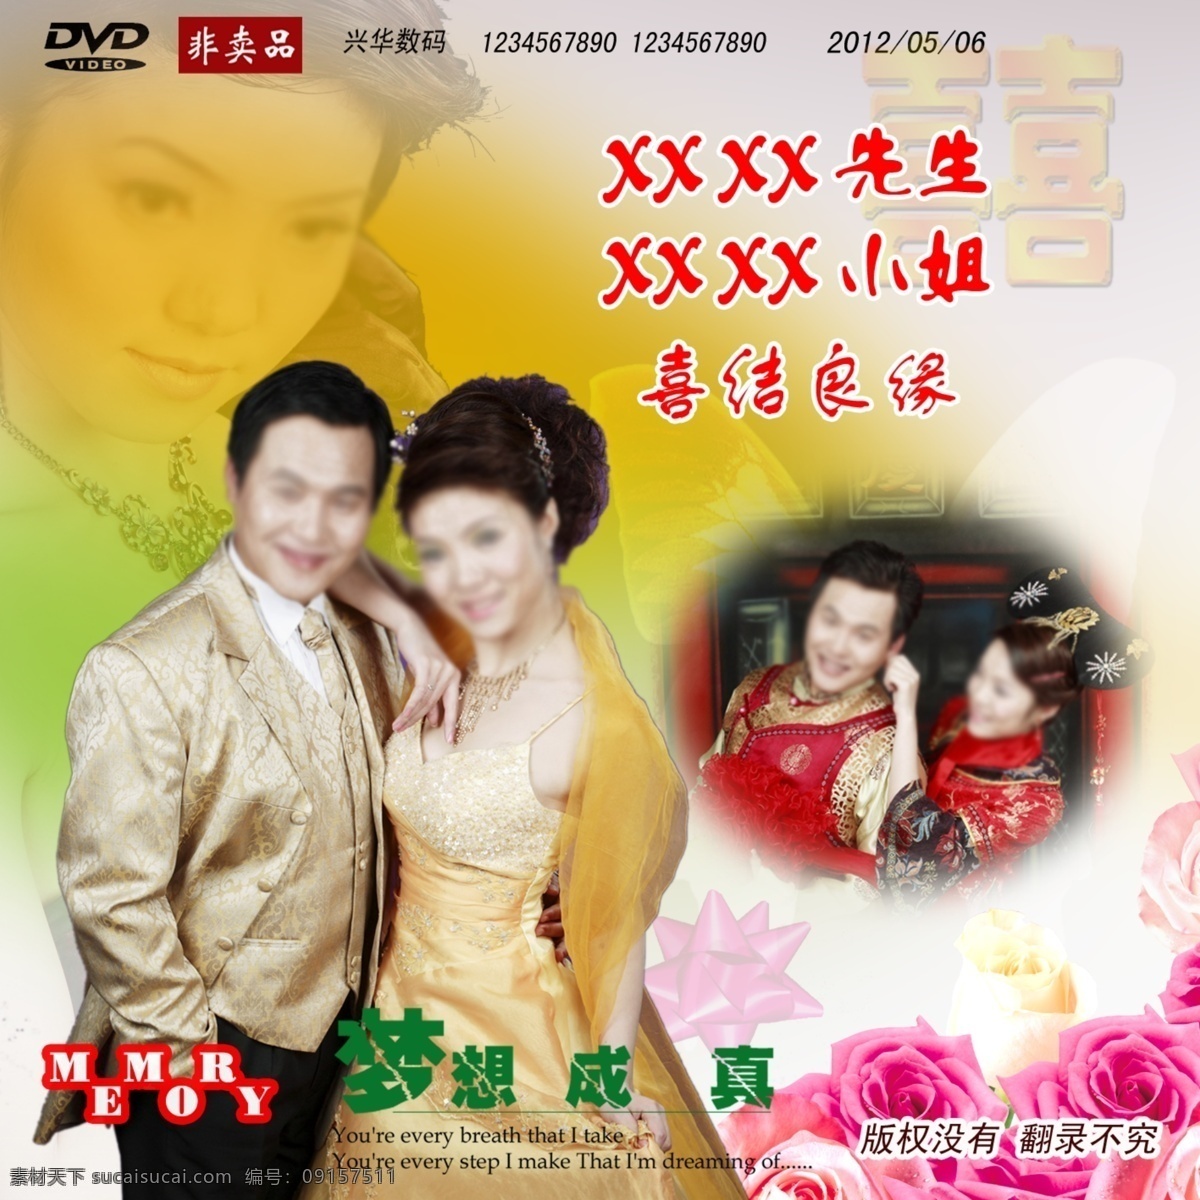 dvd 包装设计 碟片 封面 广告设计模板 结婚 玫瑰花 源文件 模板下载 psd源文件